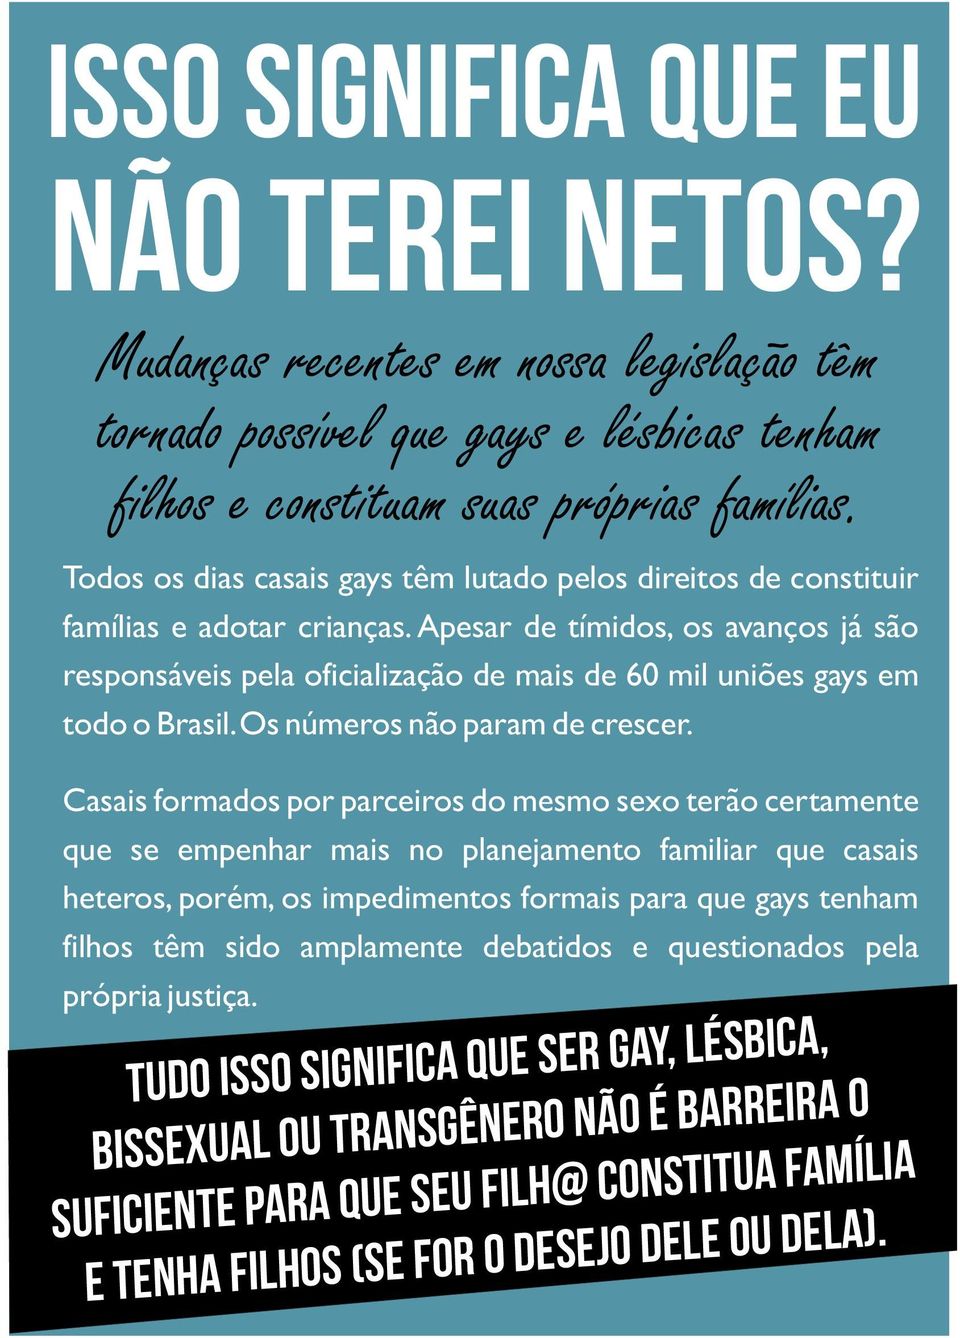 Apesar de tímidos, os avanços já são responsáveis pela oficialização de mais de 60 mil uniões gays em todo o Brasil. Os números não param de crescer.